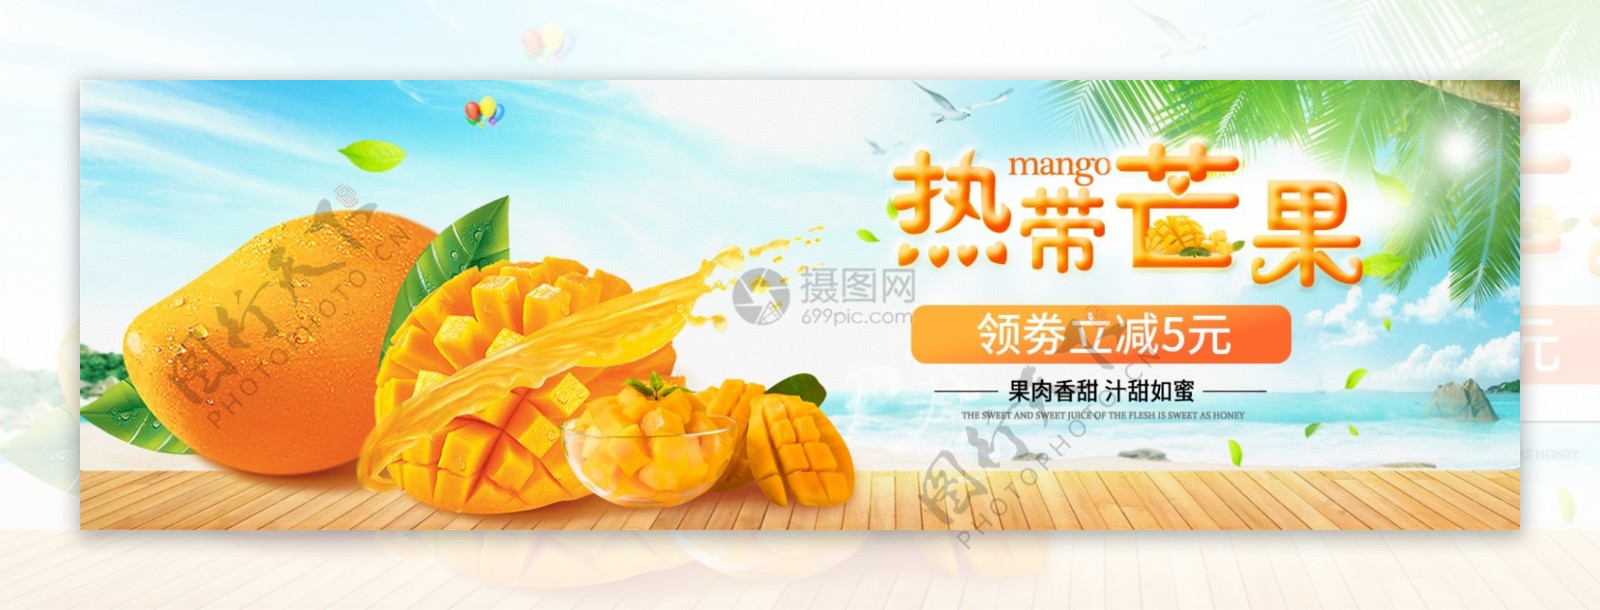 热带芒果促销淘宝banner